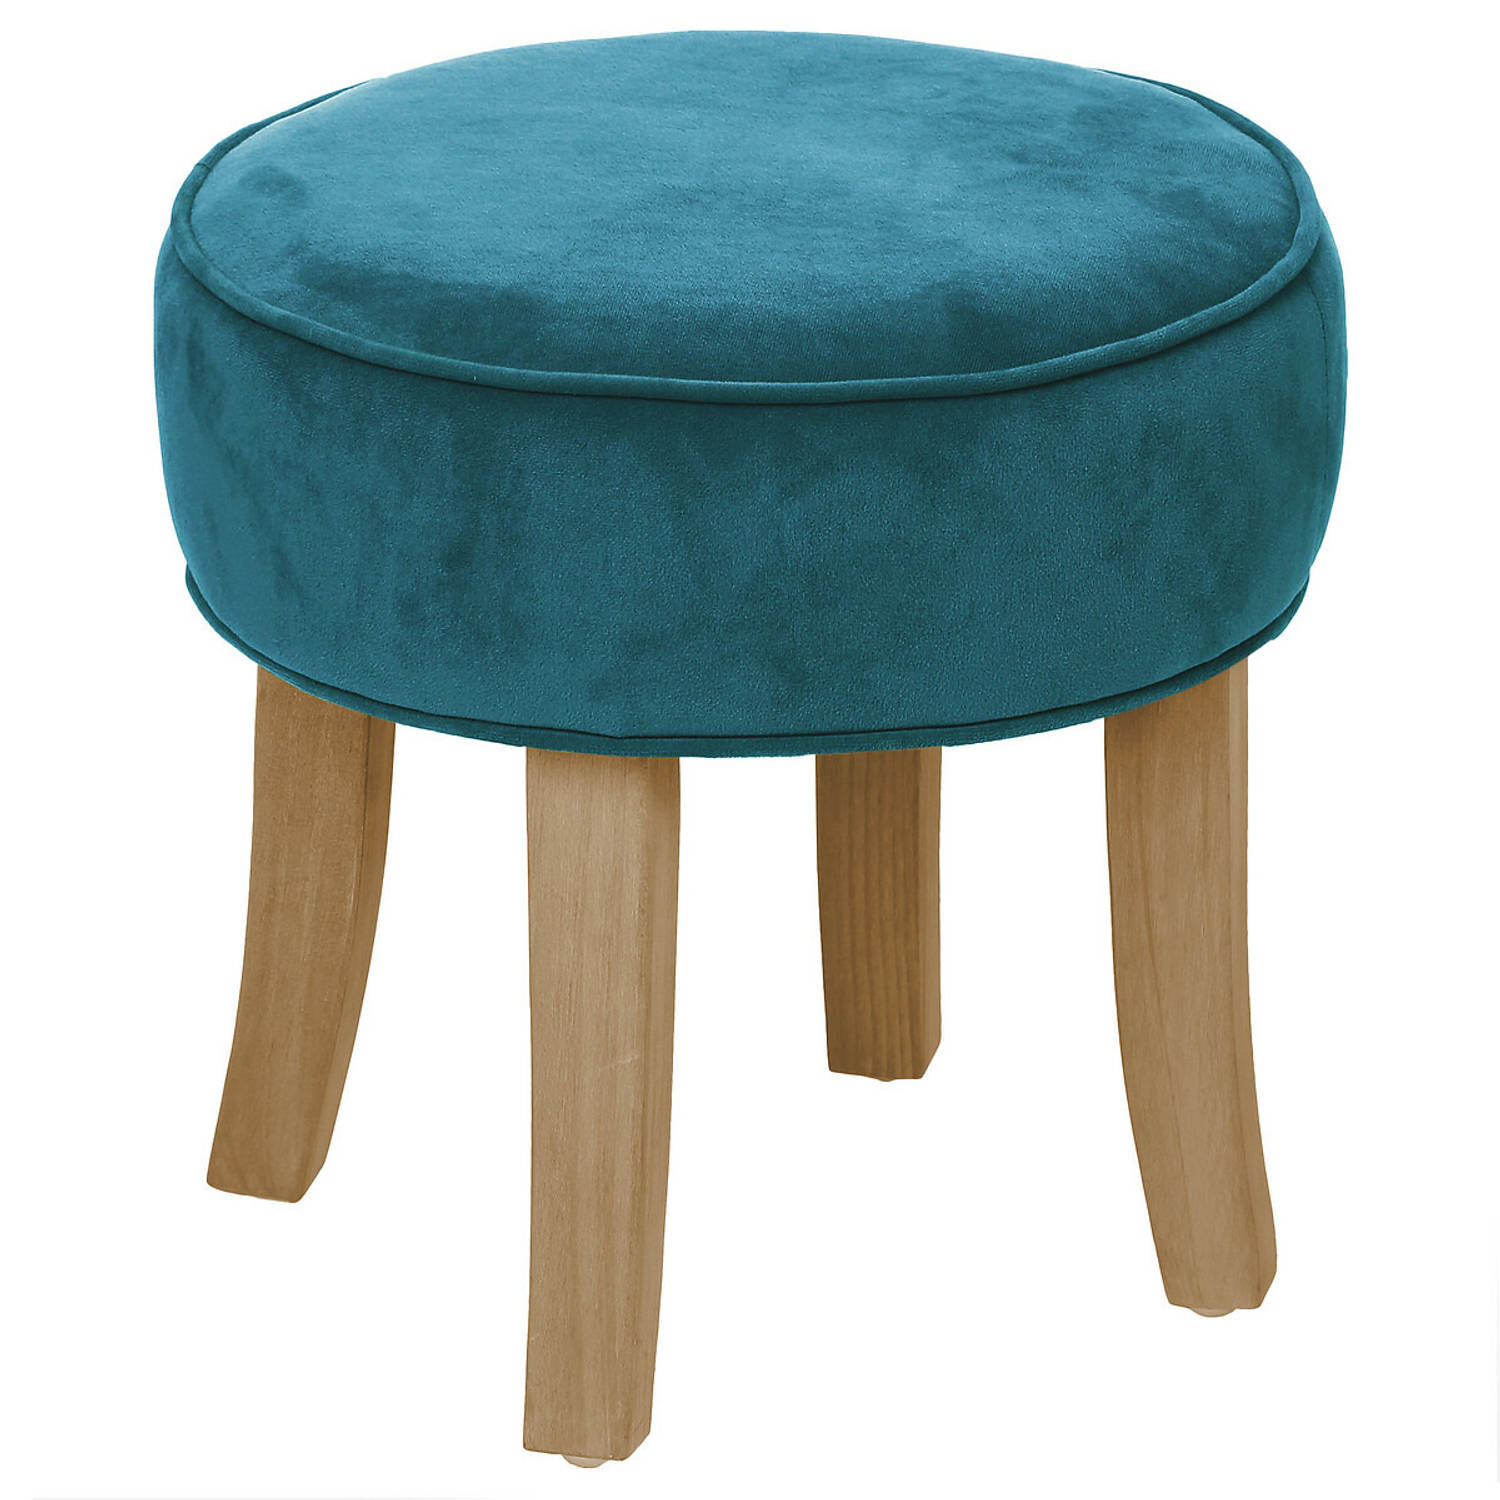 Zit krukje-bijzet stoel hout-stof blauw fluweel D35 x H40 cm Krukjes